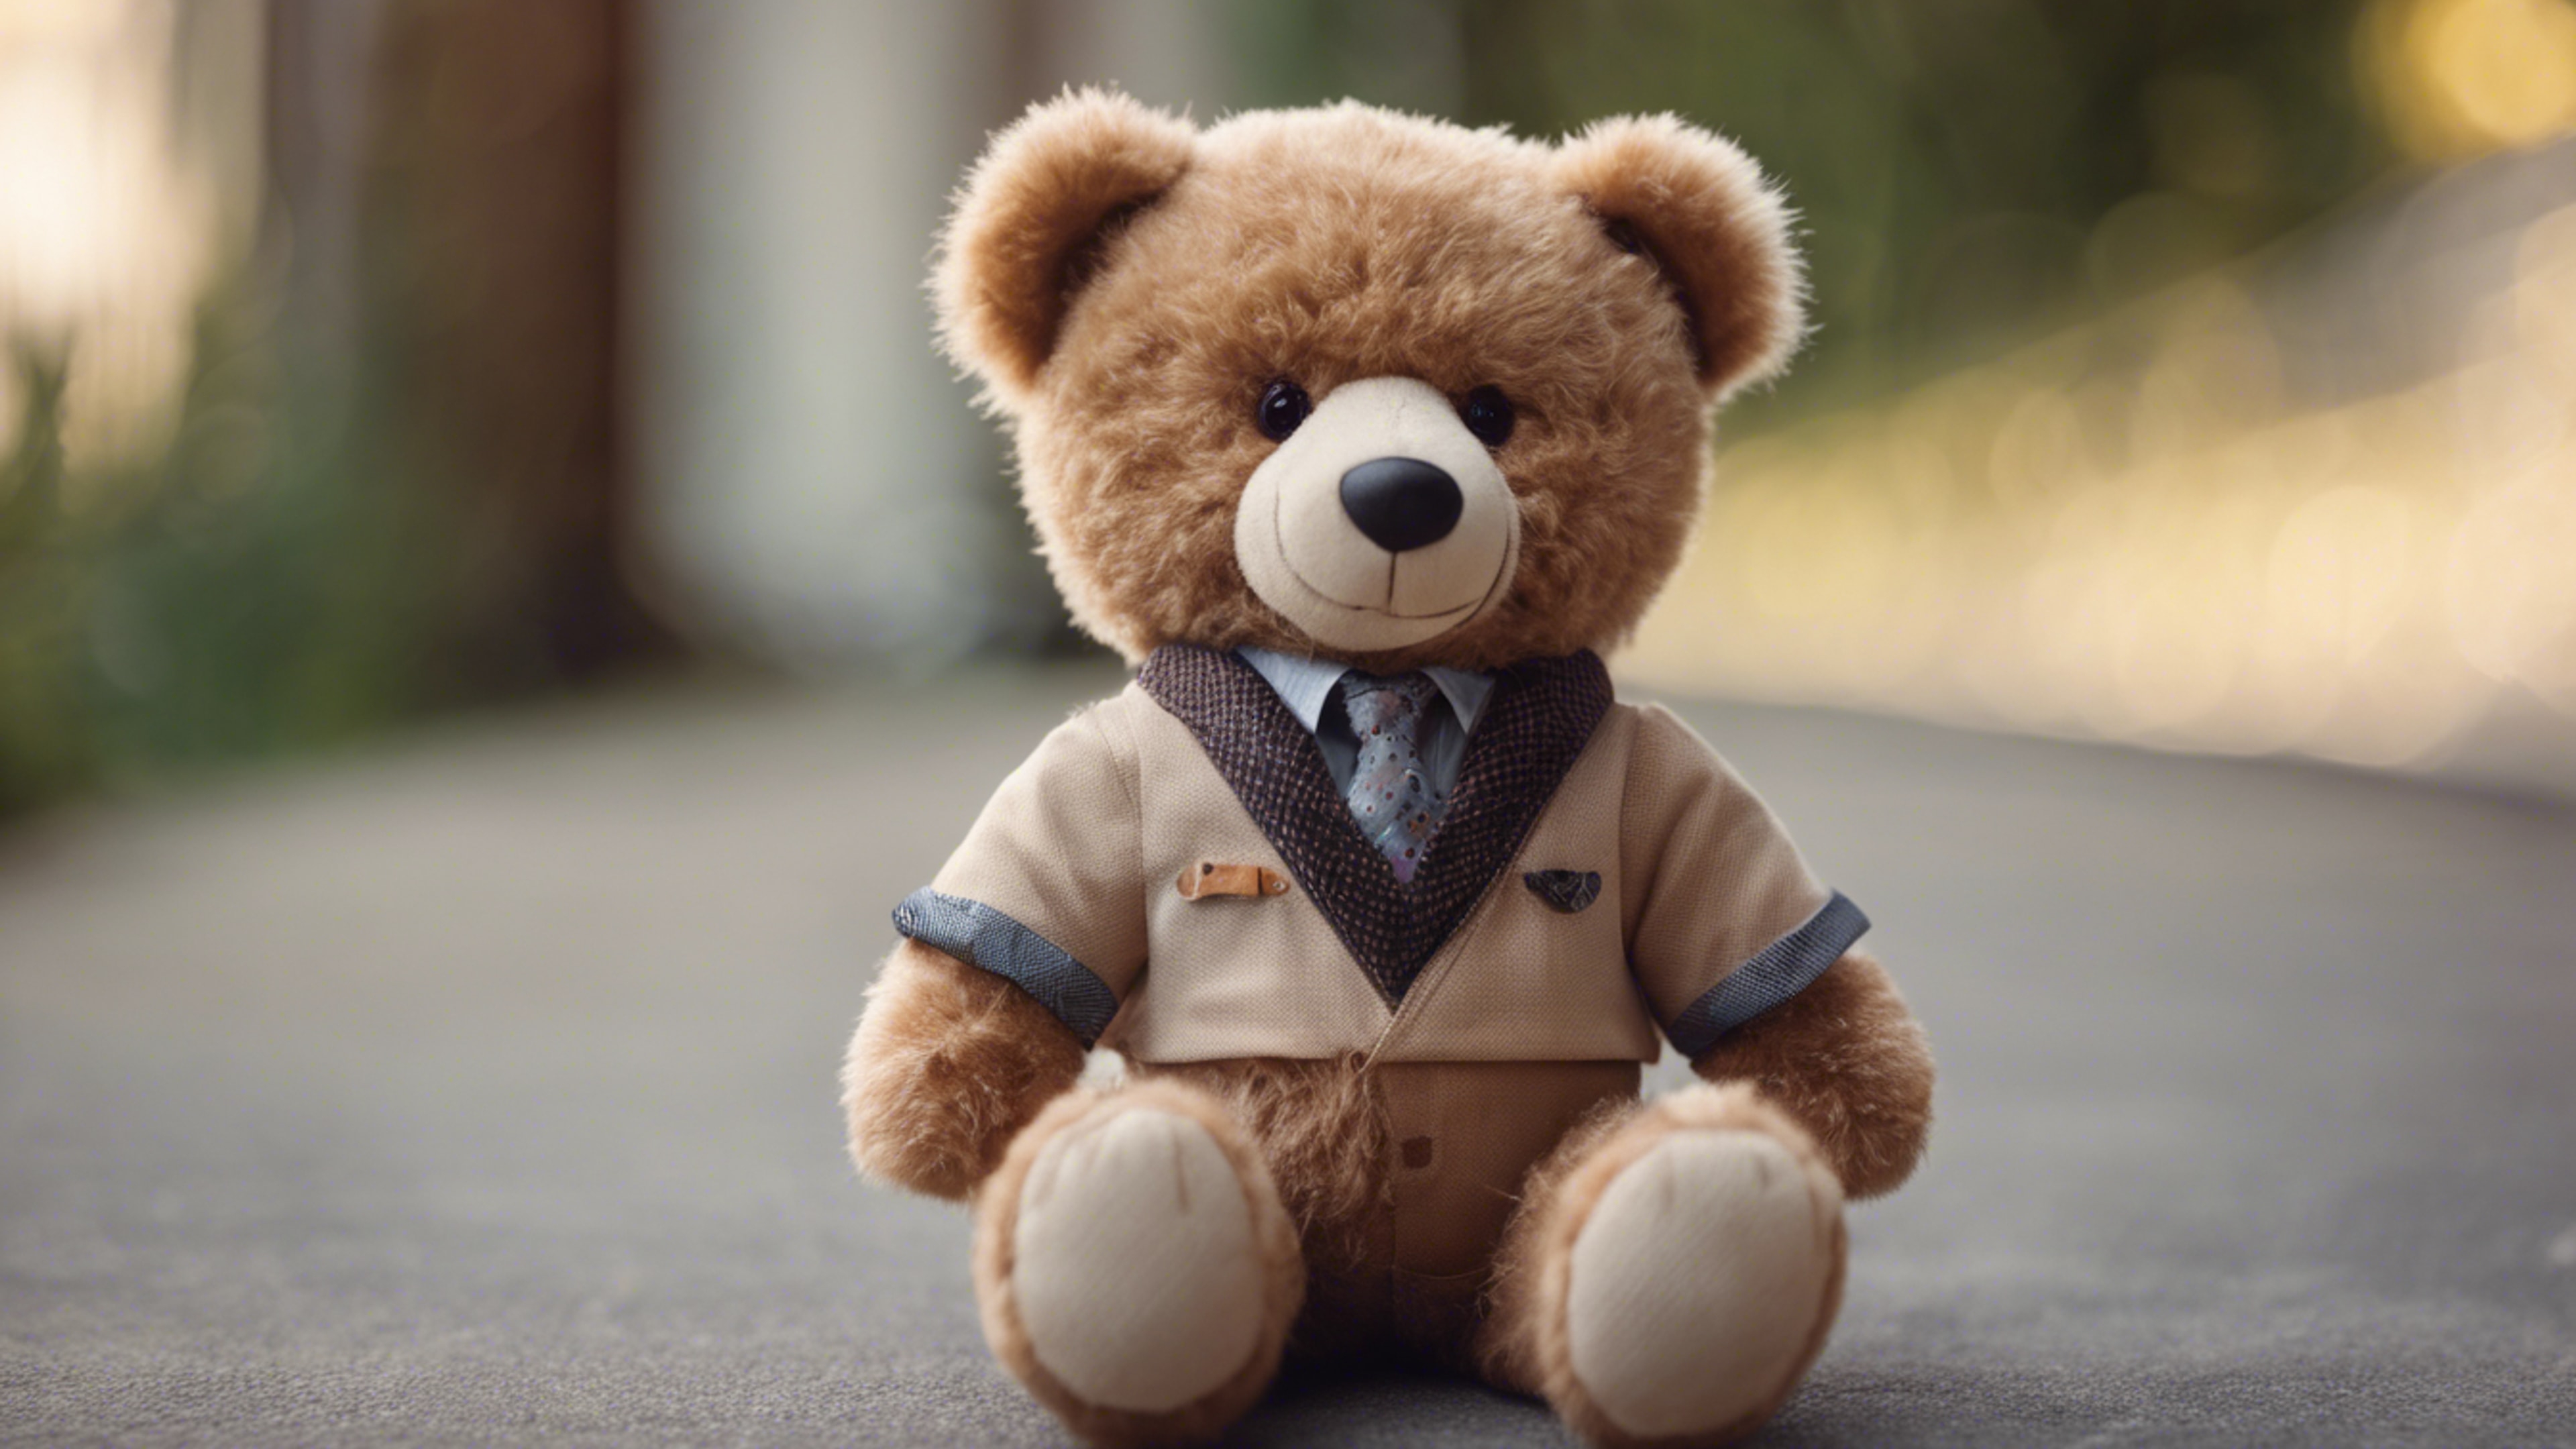 A teddy bear with light brown fur wearing a preppy outfit. duvar kağıdı[c4dfc3c378844a52a1e6]